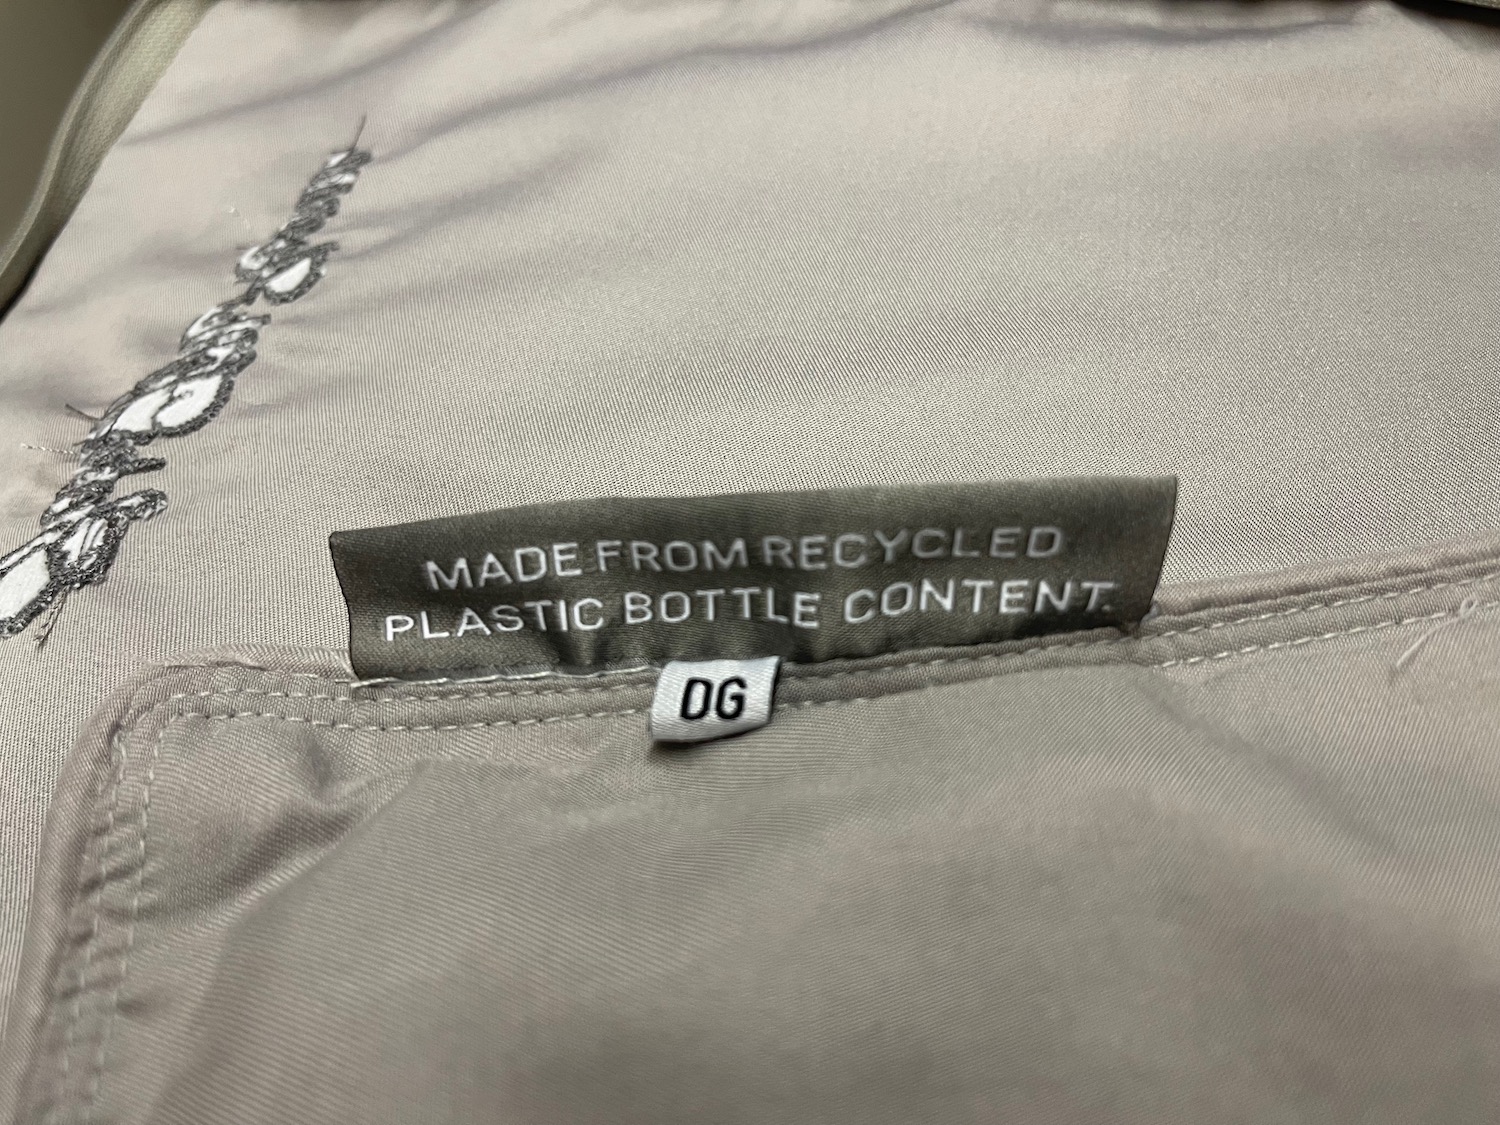 a label on a jacket